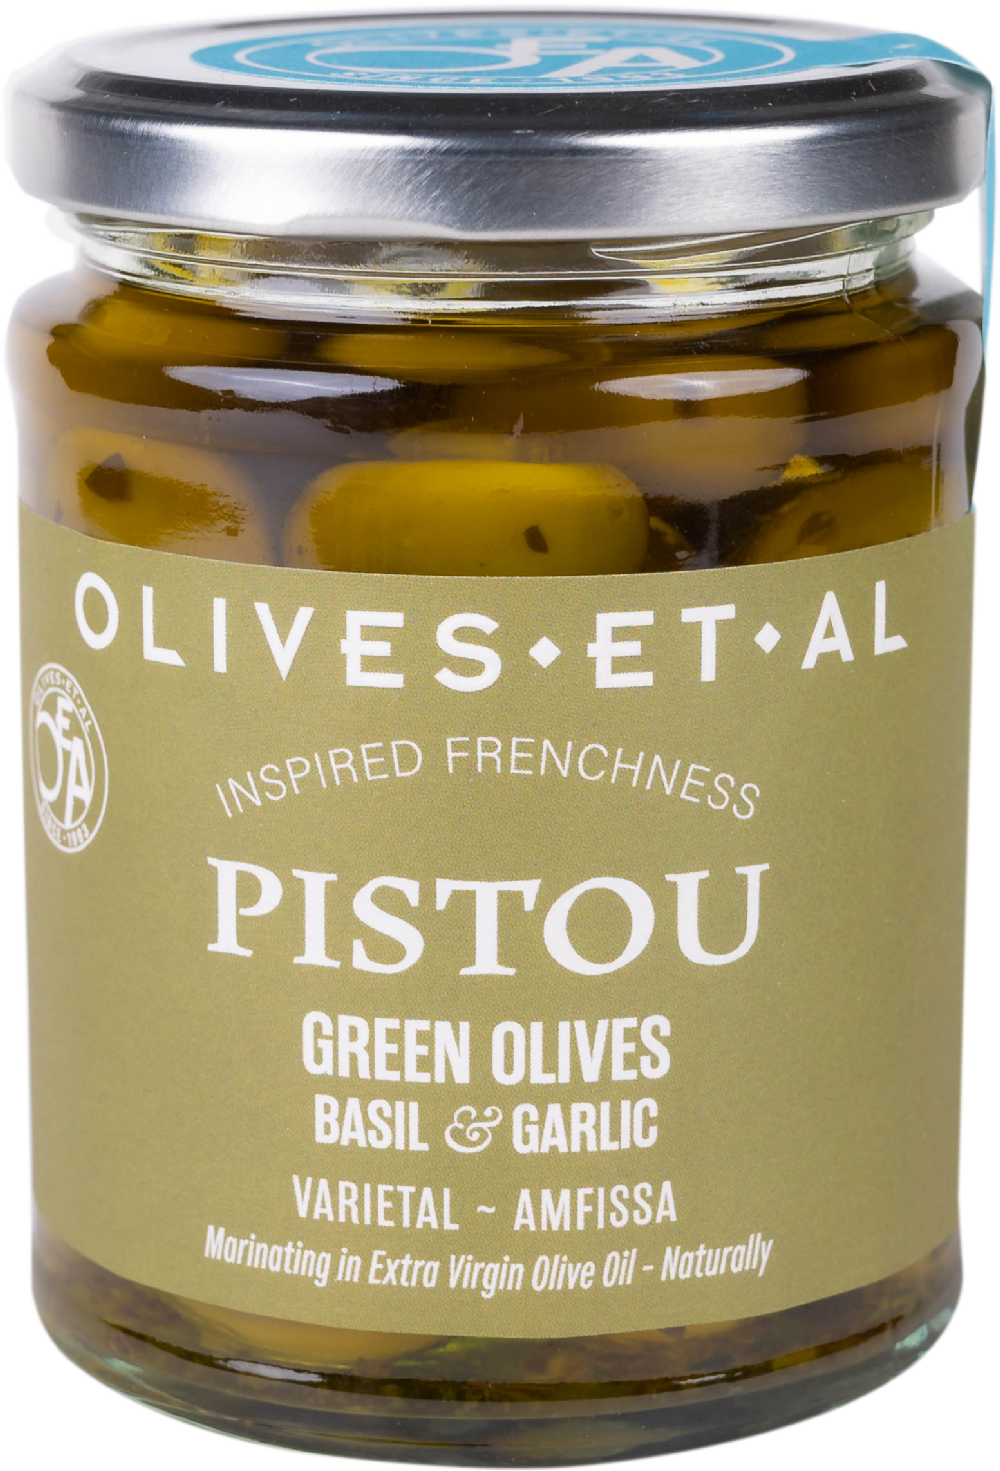 OLIVES ET AL Pistou Green Olives - Basil & Garlic 250g